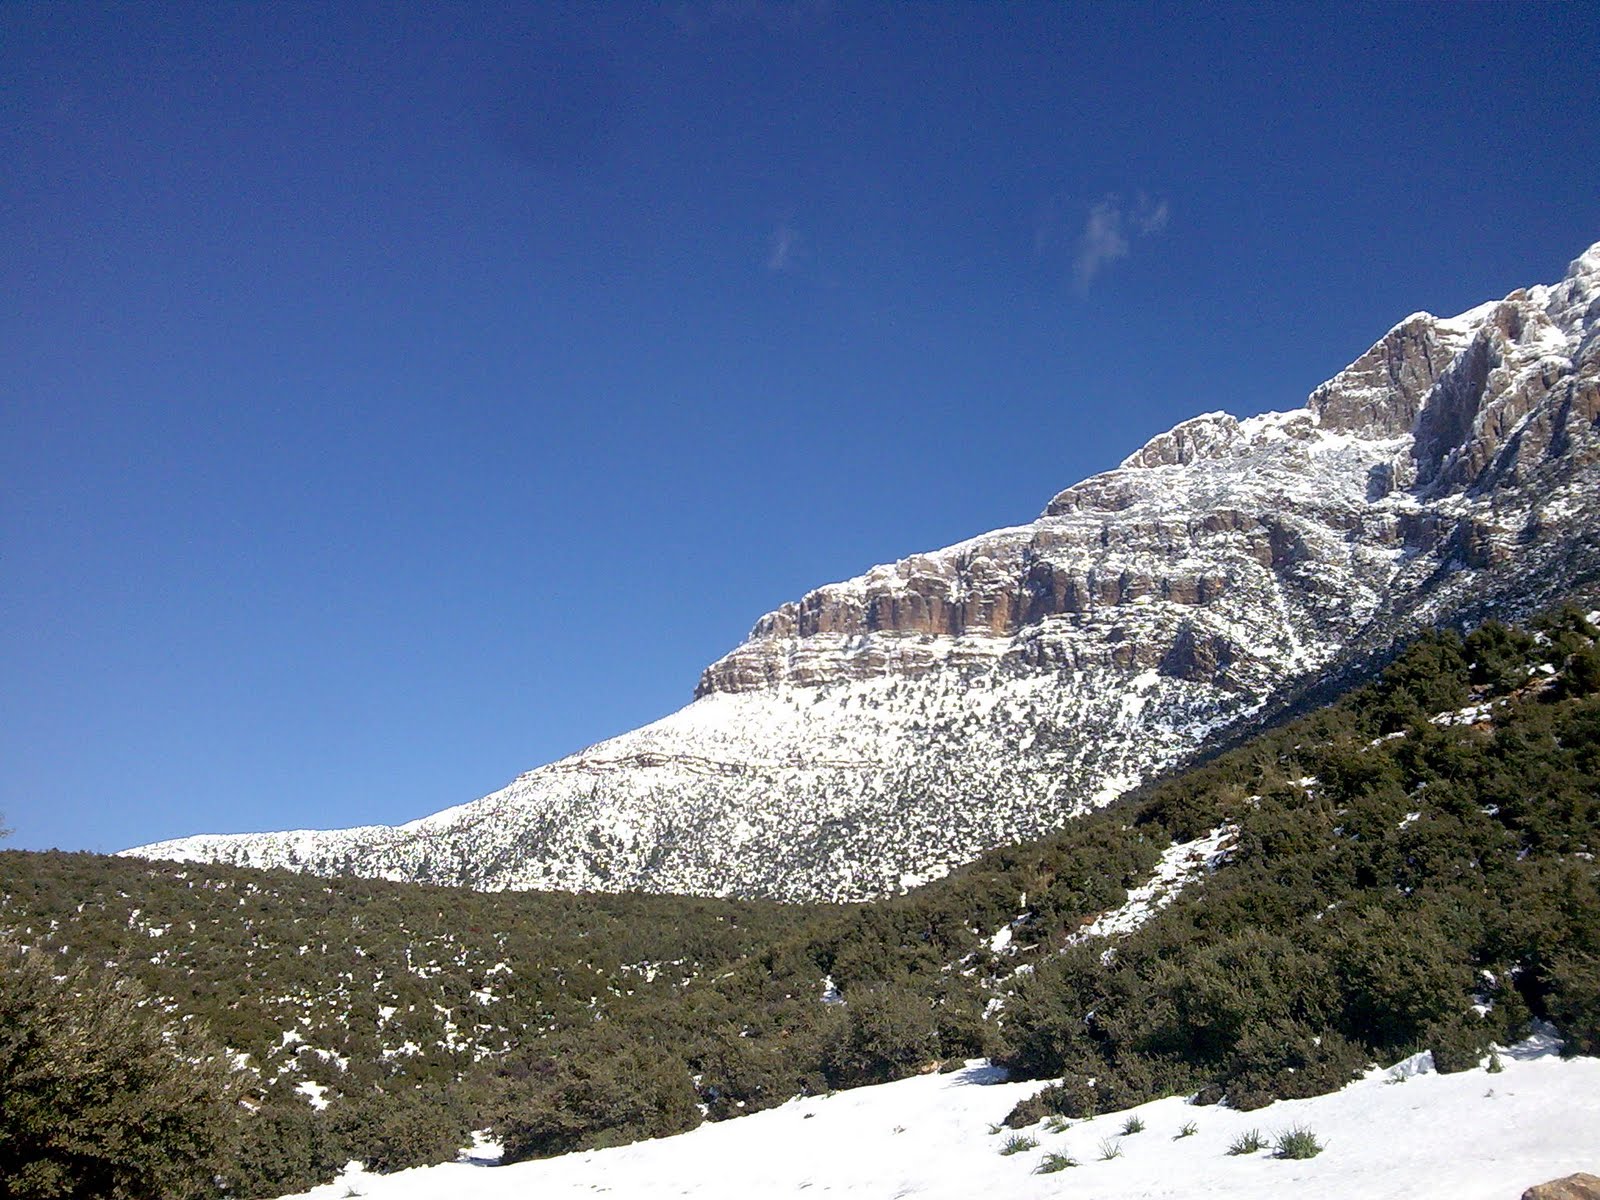  صور رائعة لجبال الونشريس لا تفوتوها  Image019